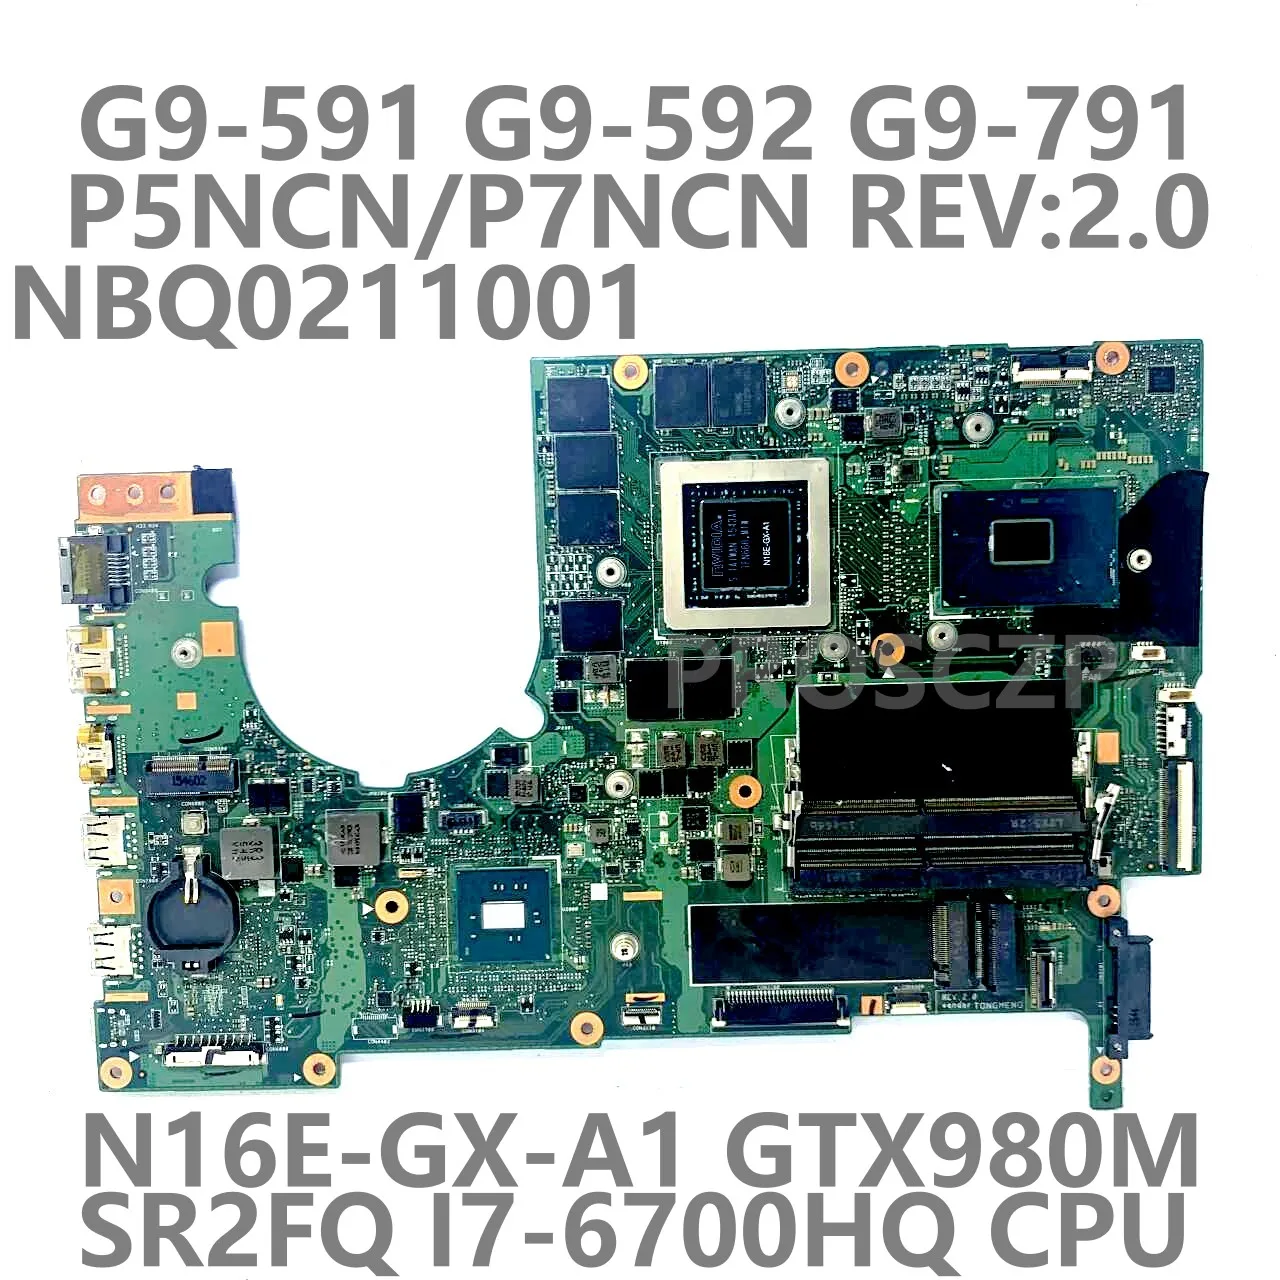 

For Acer G9-591 G9-592 G9-791 Laptop Motherboard P5NCN/P7NCN REV.2.0 With SR2FQ I7-6700HQ CPU N16E-GX-A1 GTX980M 100%Tested Good